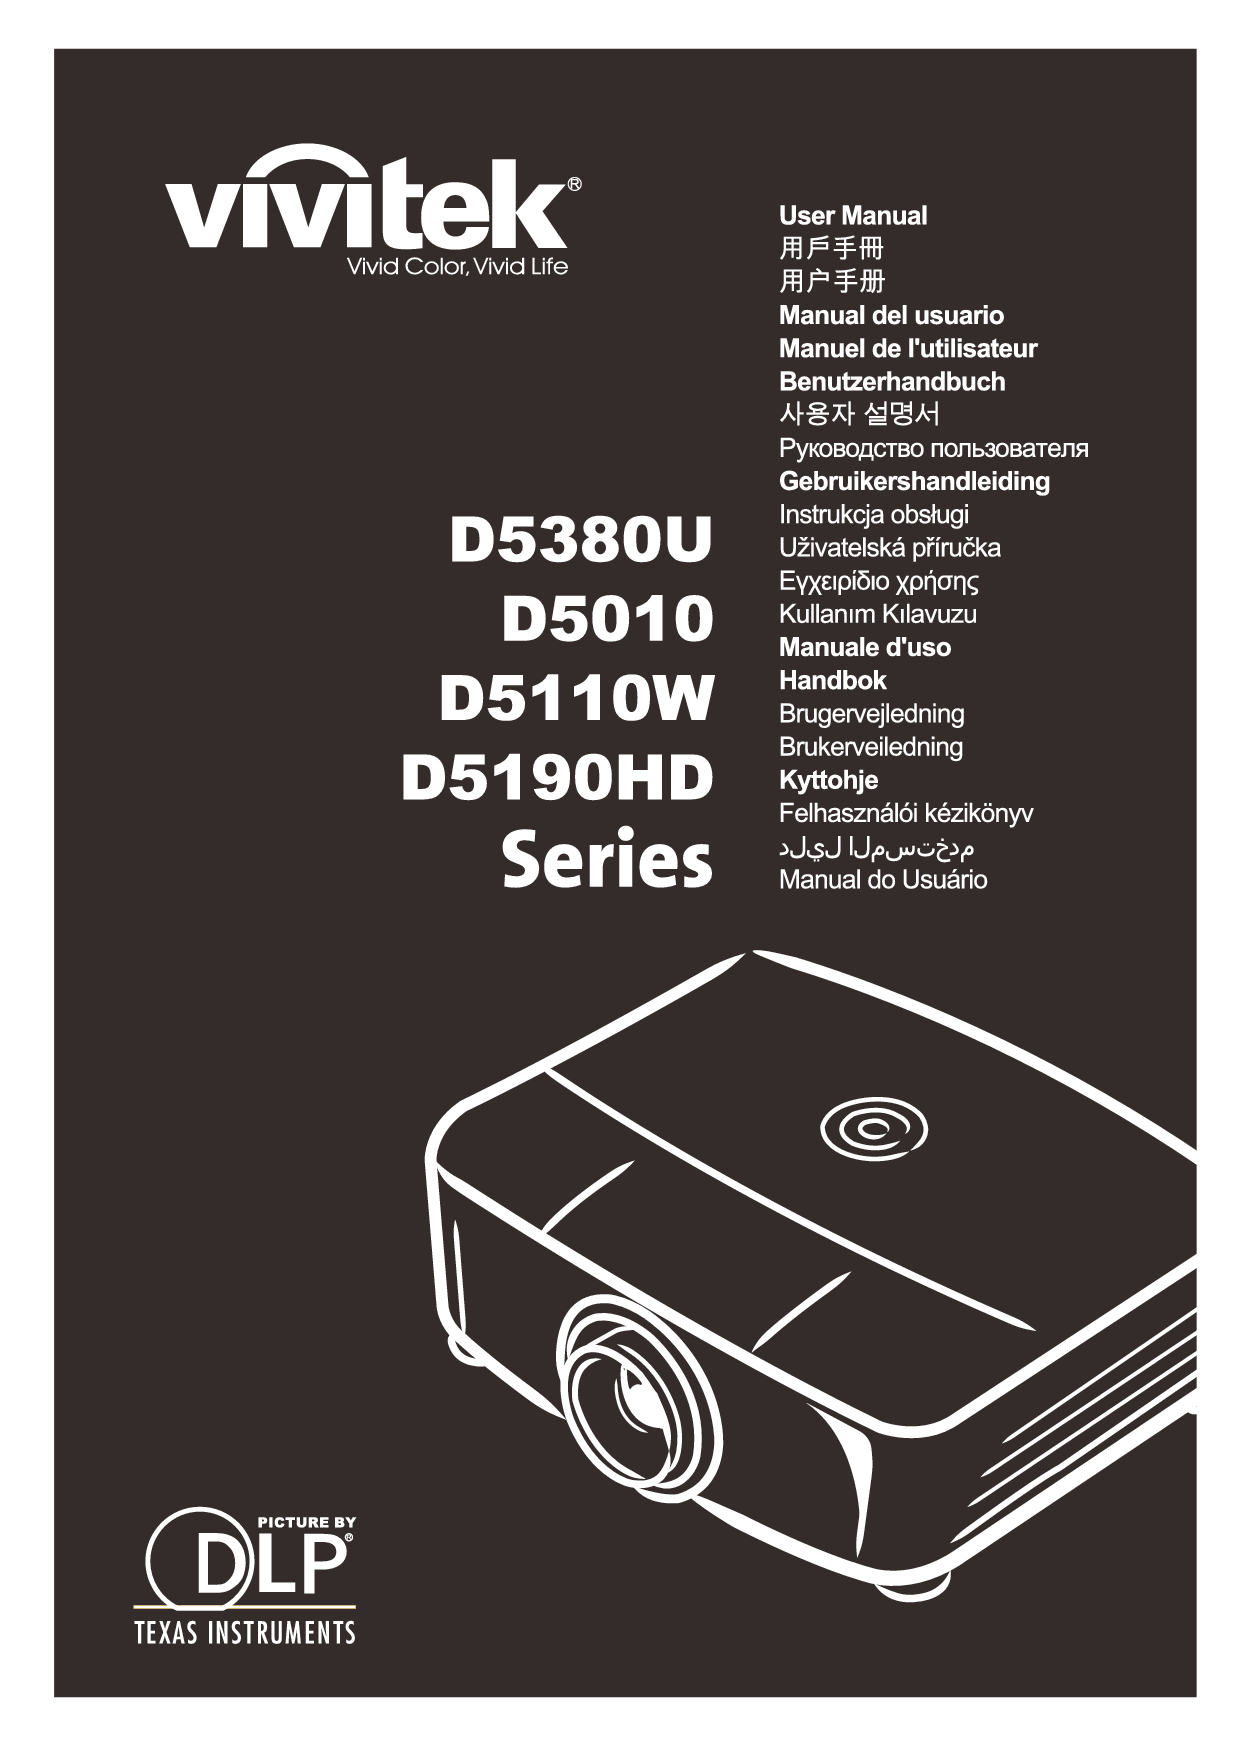 丽讯 Vivitek D5010, D5190HD, D5380U 用户手册 封面